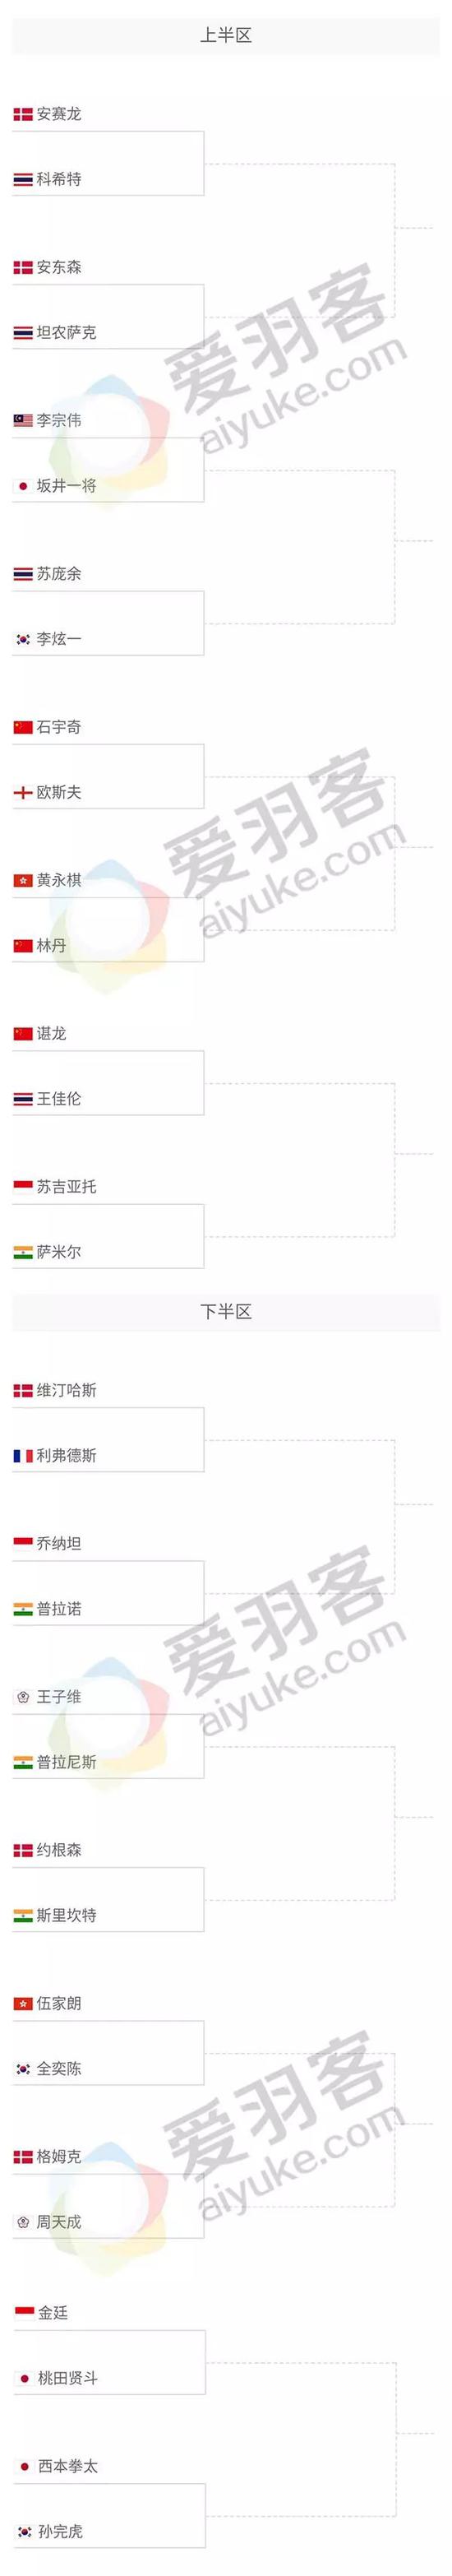 2018马来西亚羽毛球公开赛对阵表，林丹、李宗伟、安赛龙、谌龙、石宇奇上半区大战